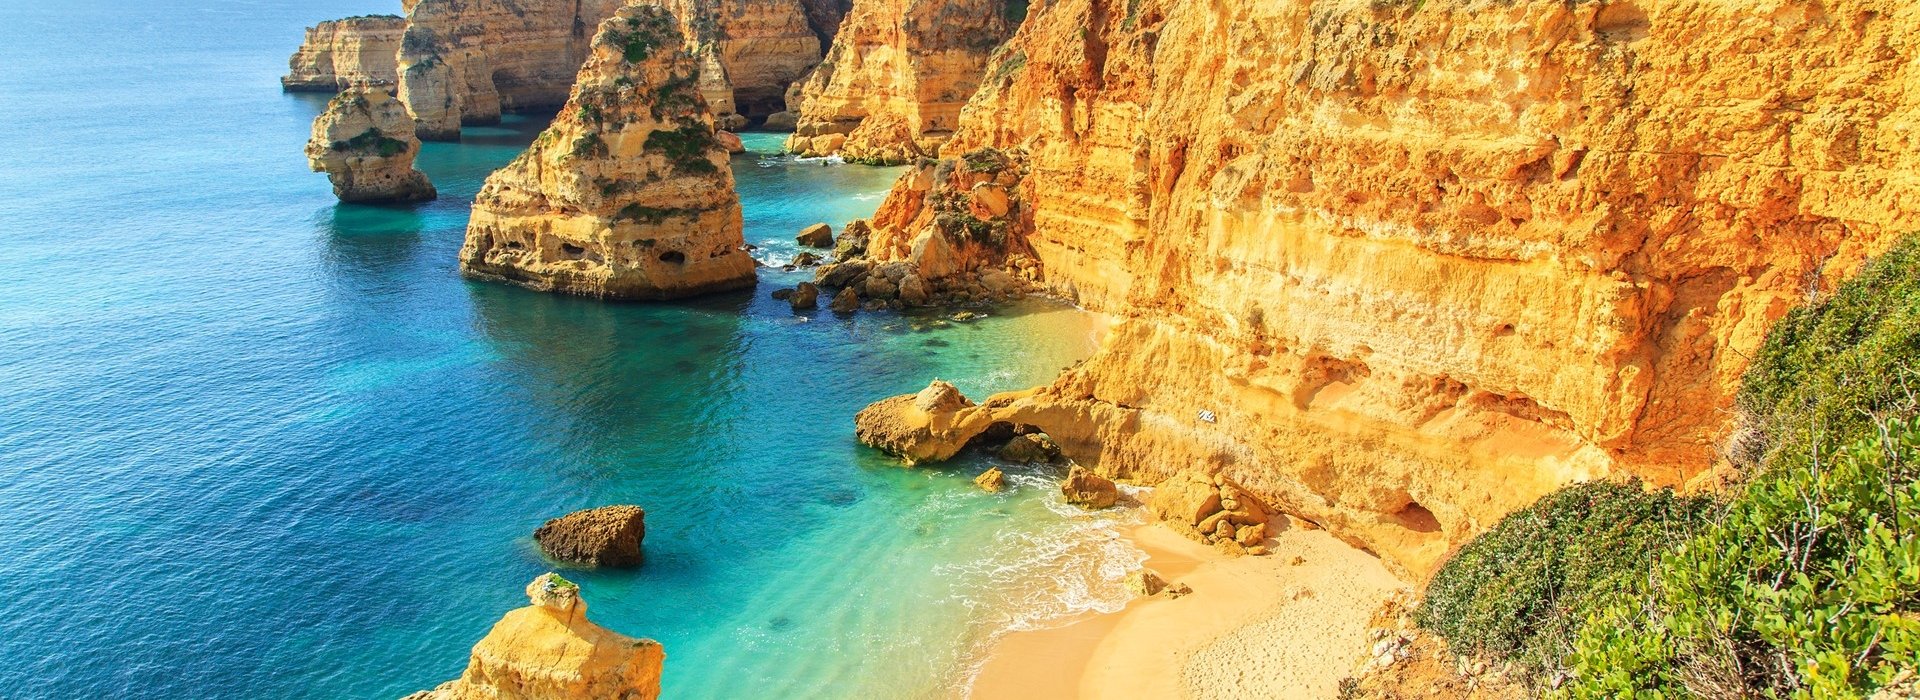 Portugal Algarve